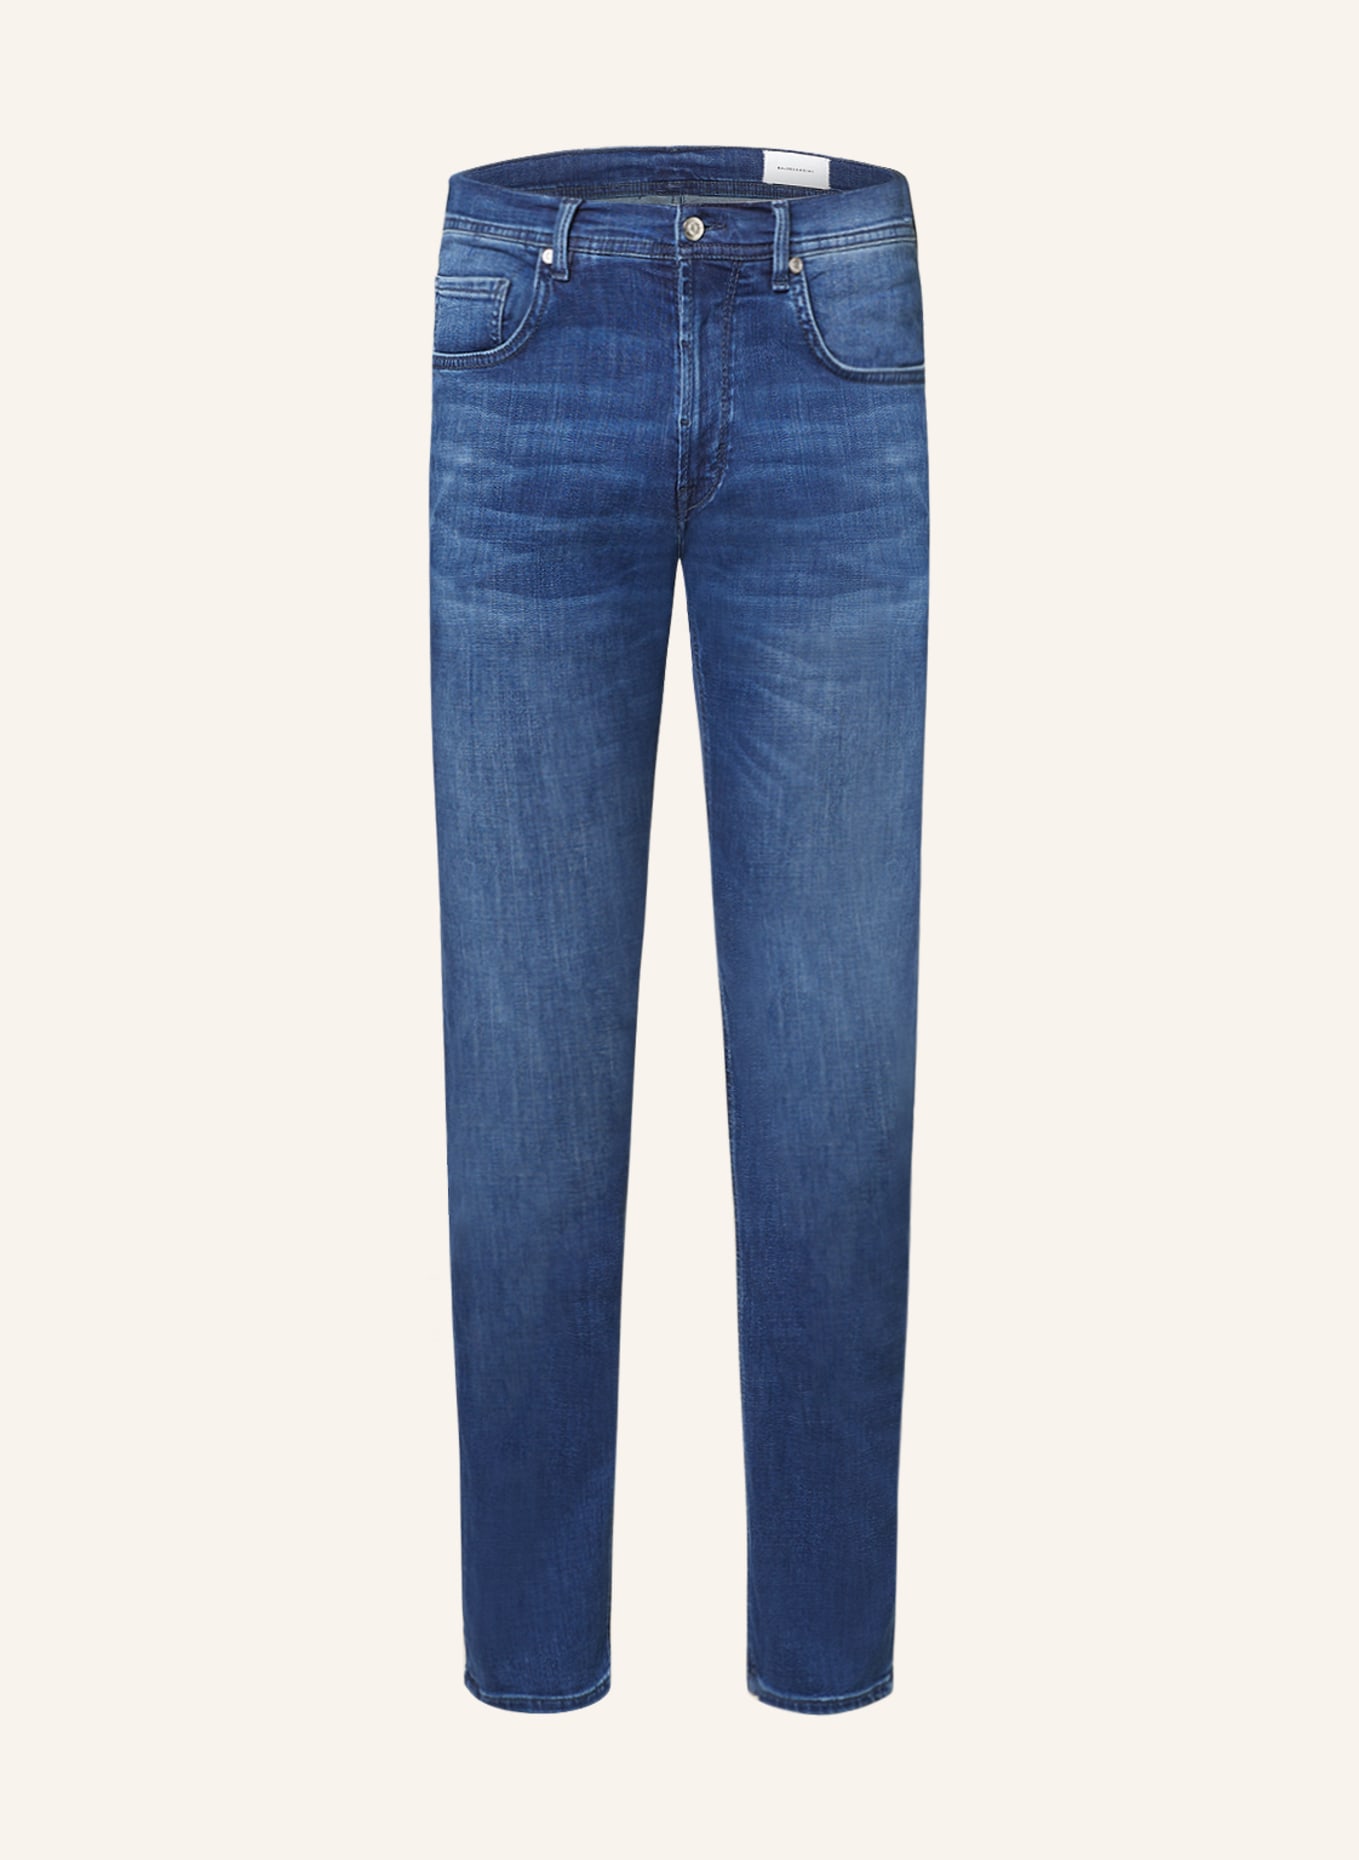 BALDESSARINI Jeans Regular Fit, Farbe: 6825 blue used whisker (Bild 1)